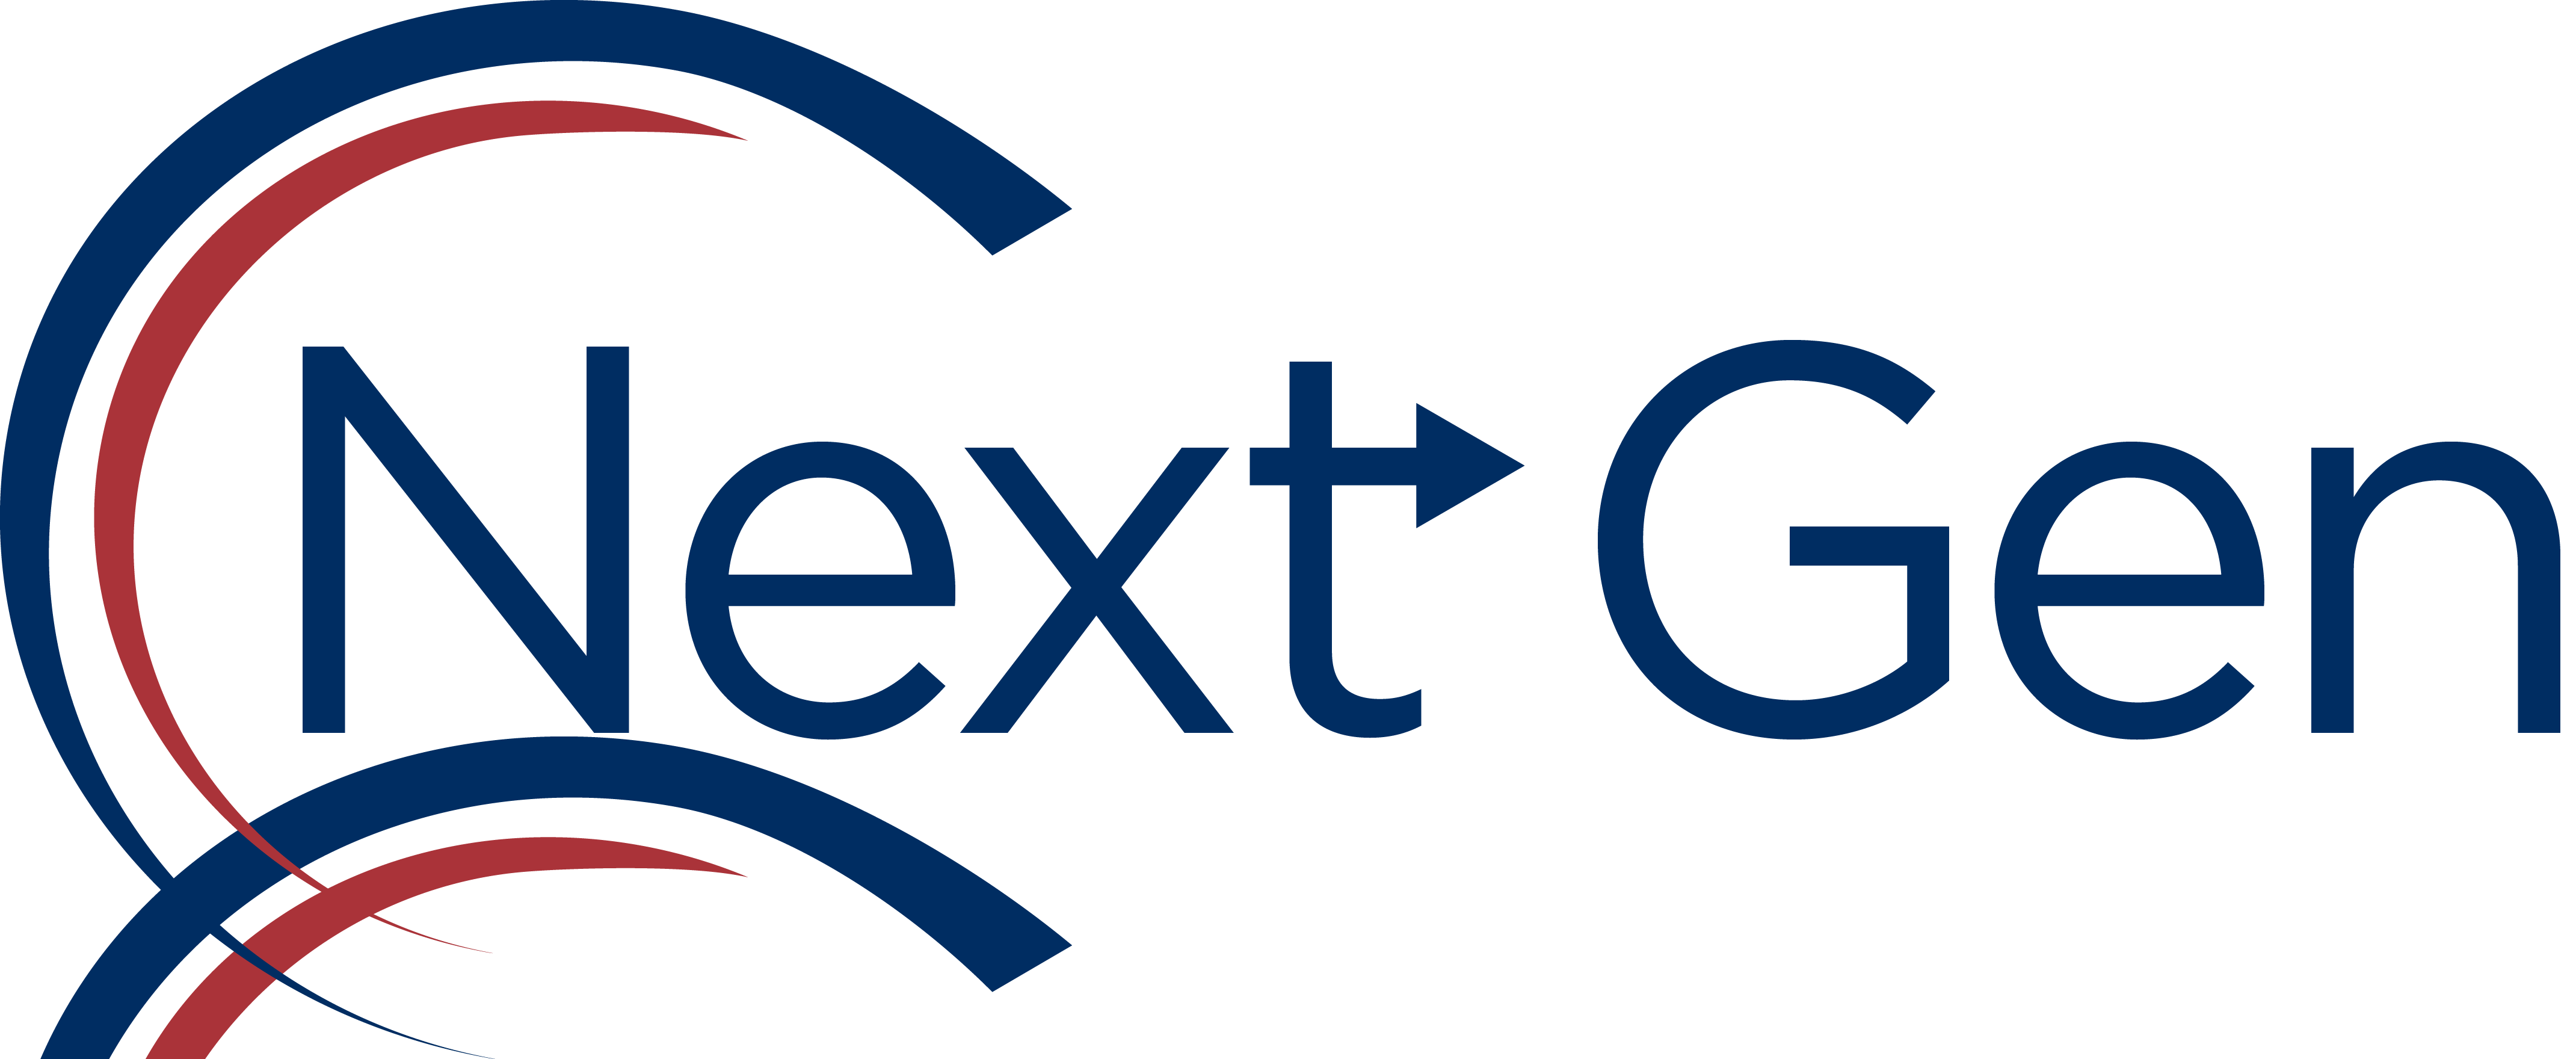 Next-Gen logo - text.png